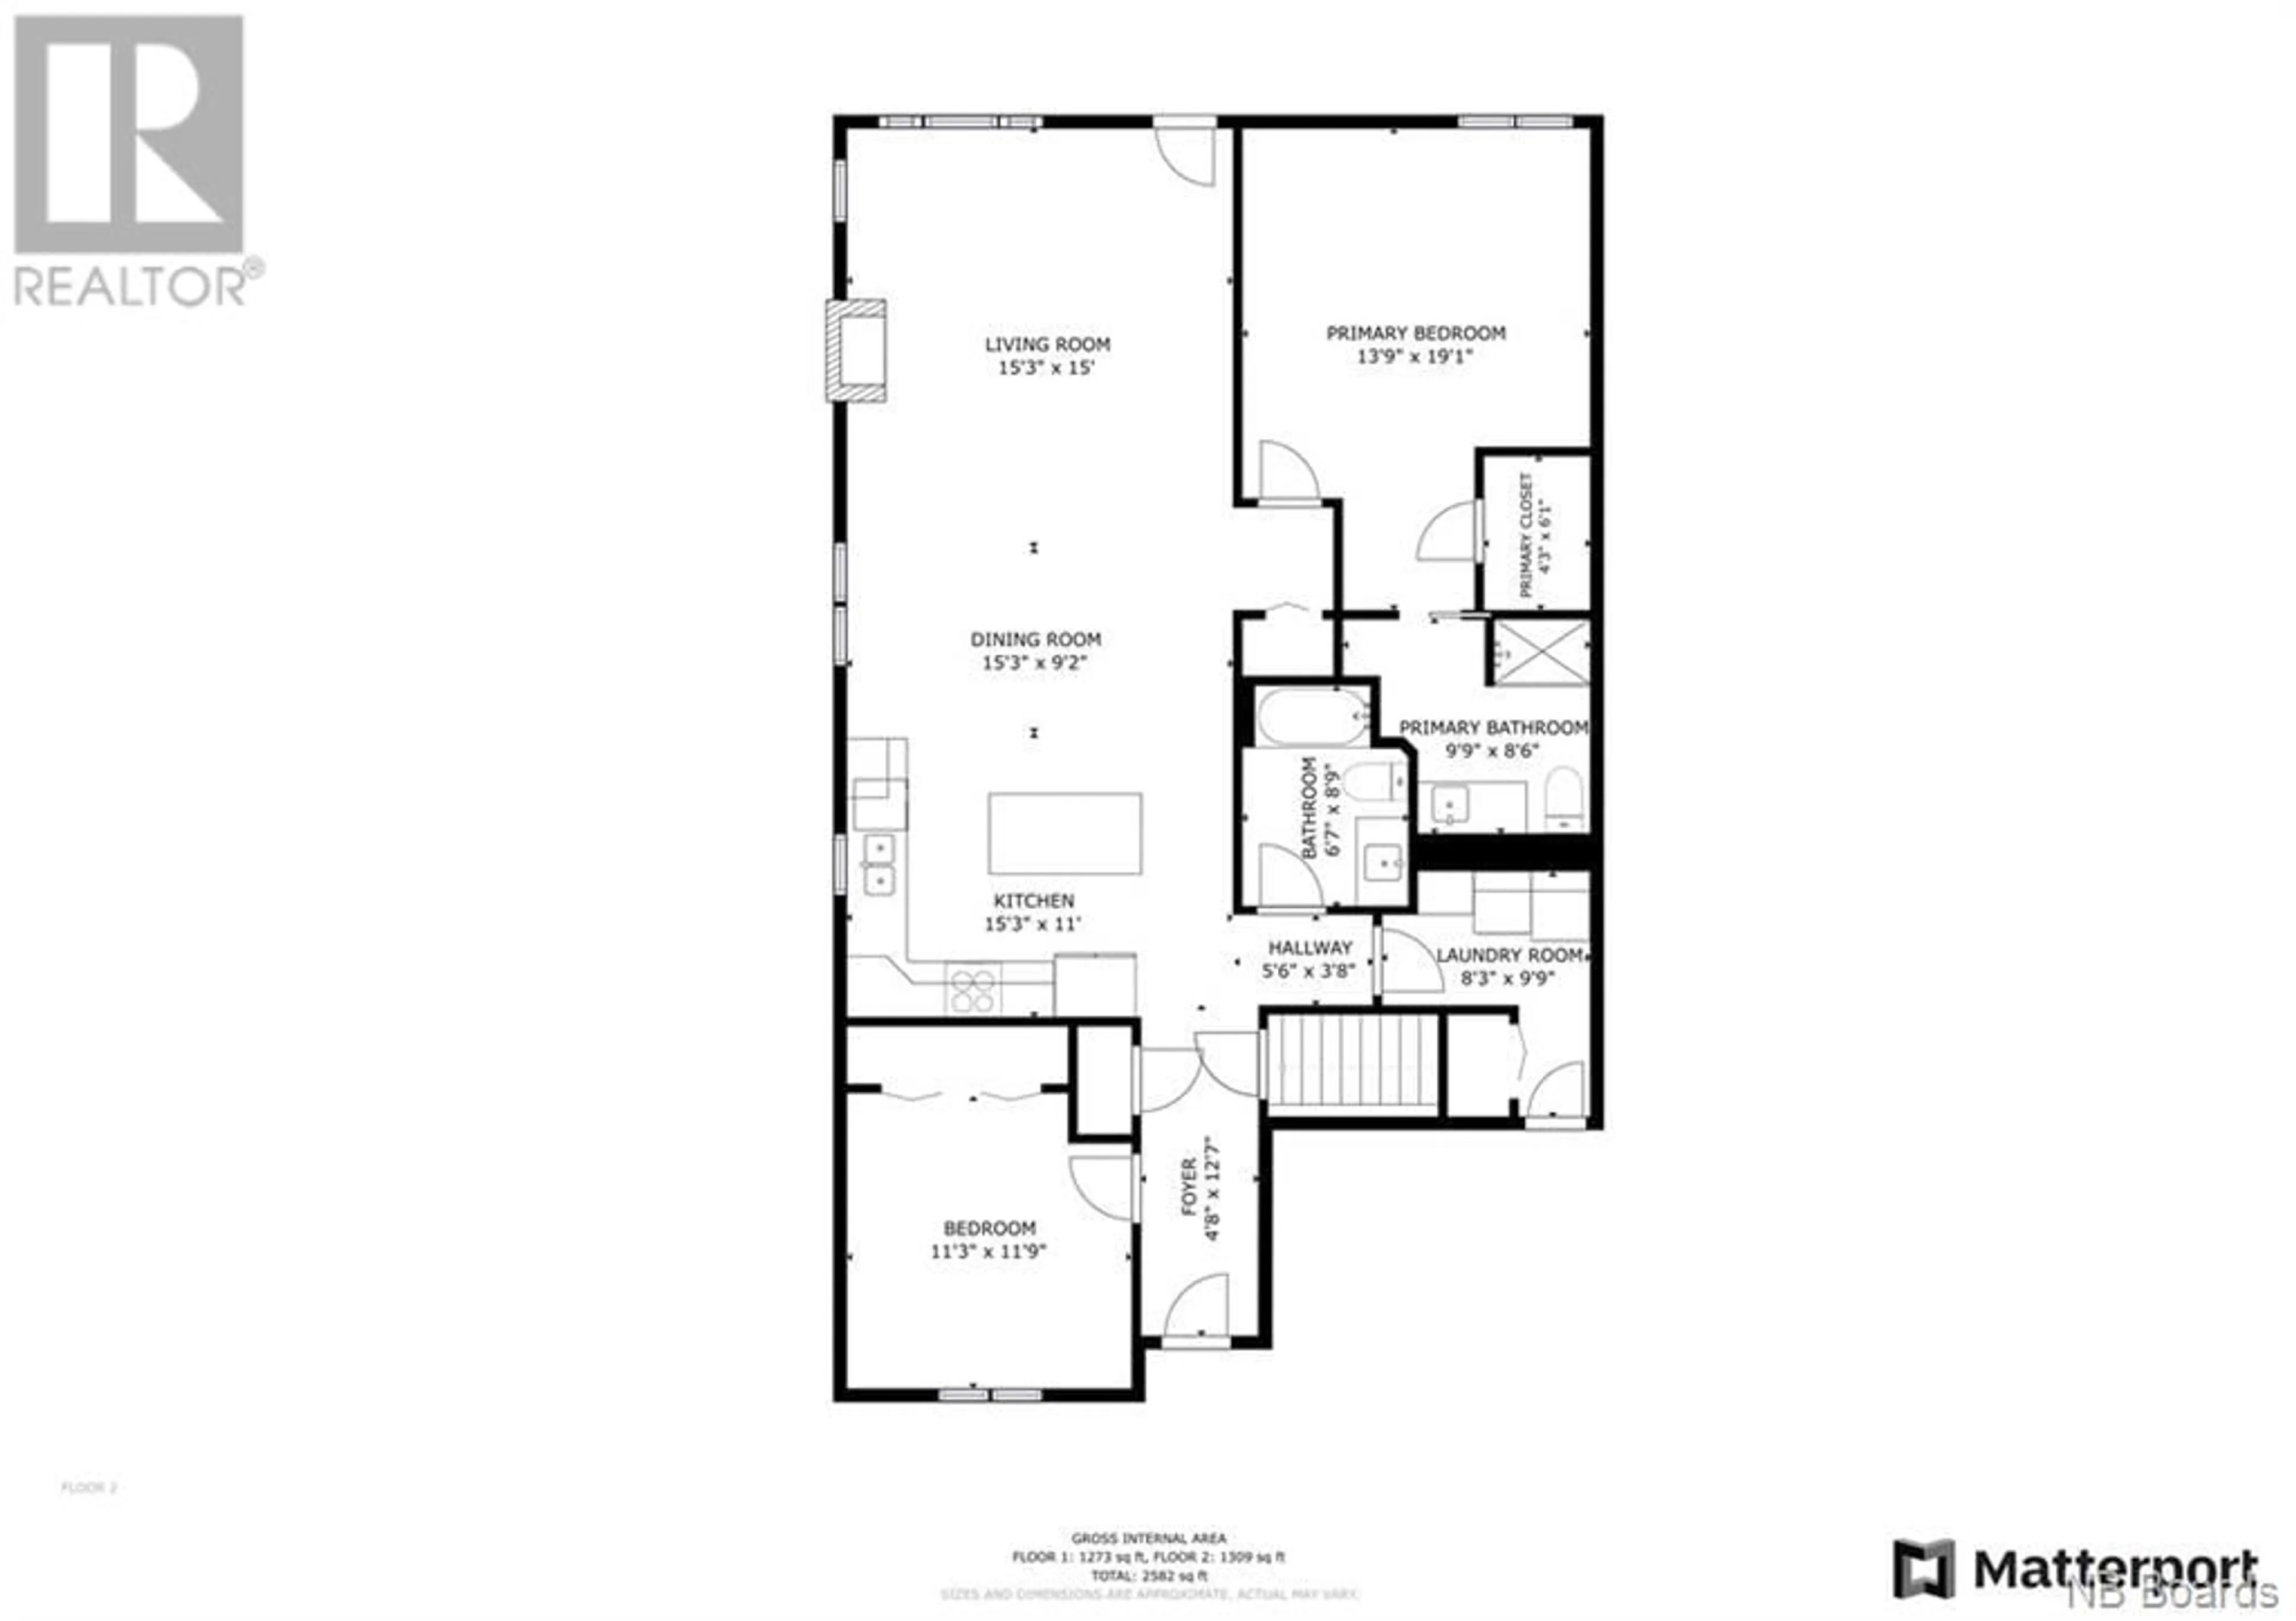 Floor plan for 275 Rainsford Lane, Fredericton New Brunswick E3B7T1